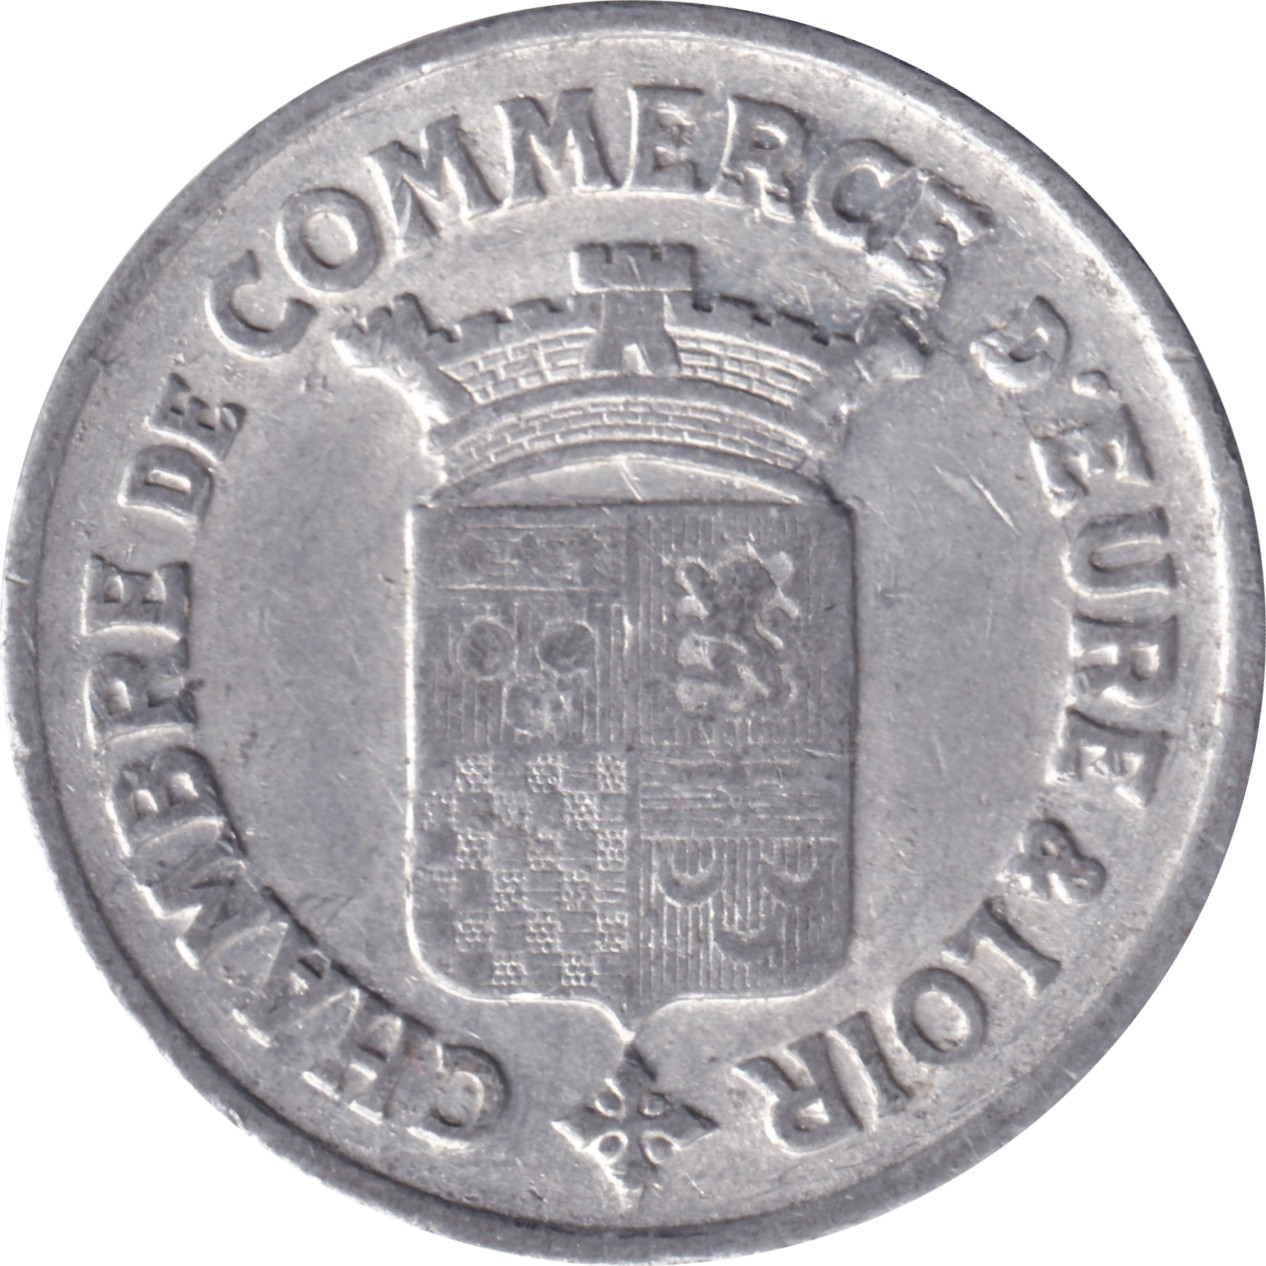 25 centimes - Eure et Loir